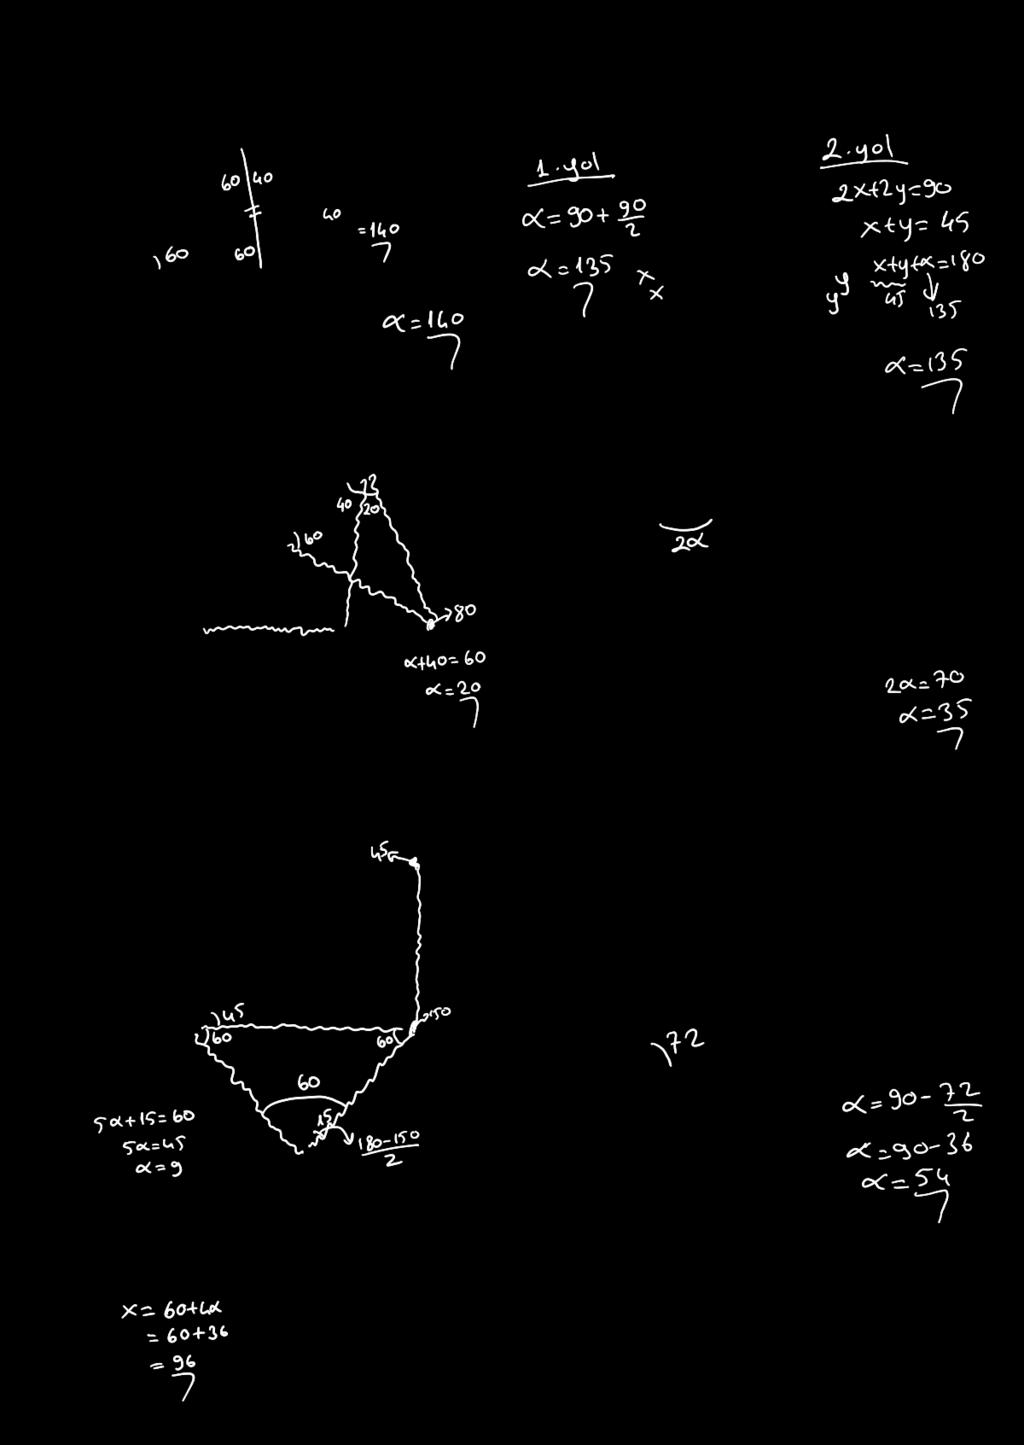 ÜÇG Ç 7. 100 10. a 0 α üçgen, = = m^h = 100, m^h = 0 olduğuna göre, m^h= a kaç derecedir? dik üçgen, [] ve [] açıortay olduğuna göre, m^h= a kaç derecedir? 8. 11.